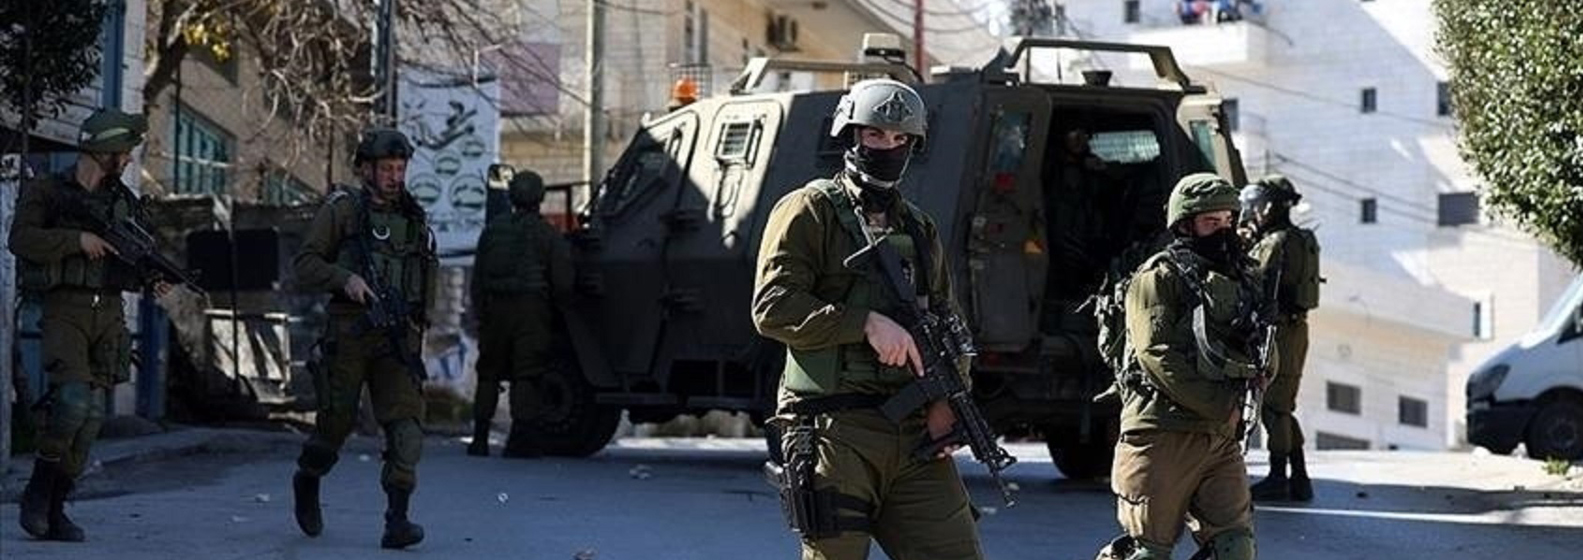 تقرير حقوقي مفصل عن عمليات الإعدام الميداني في الأراضي الفلسطينية المحتلة